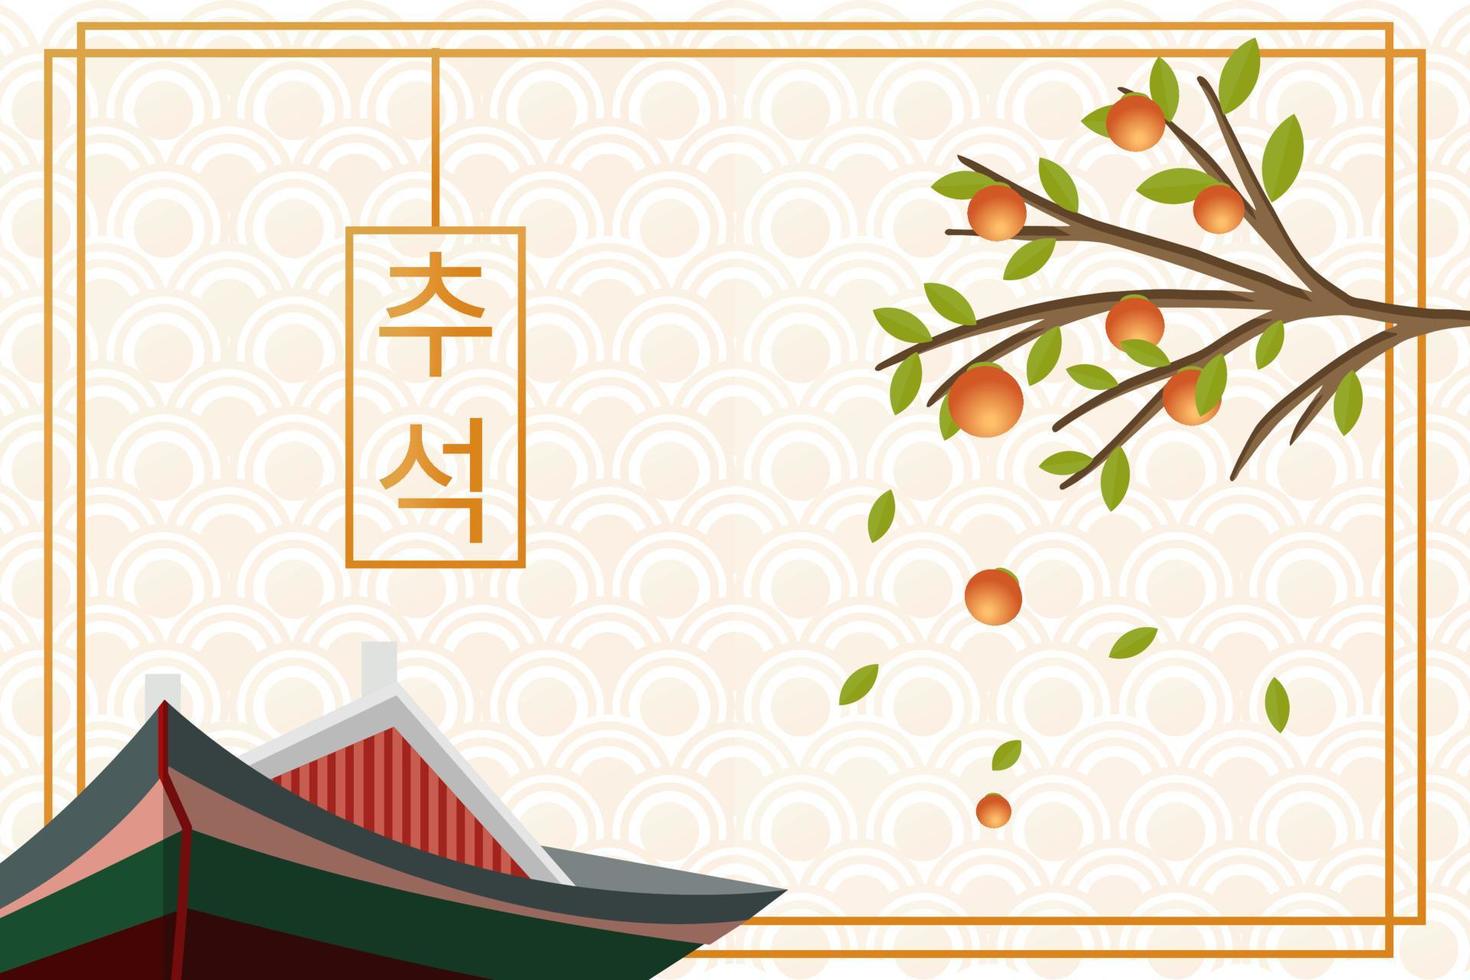 Chuseok Hàn Quốc, nền truyền thống Hàn Quốc vector: Tranh vector với đề tài Chuseok sẽ giúp bạn khám phá nền văn hóa Hàn Quốc vô cùng sâu sắc và định hình. Dòng chữ càng kèm theo hứa hẹn sẽ mang đến niềm vui và hạnh phúc. Hãy cùng khám phá nhé!